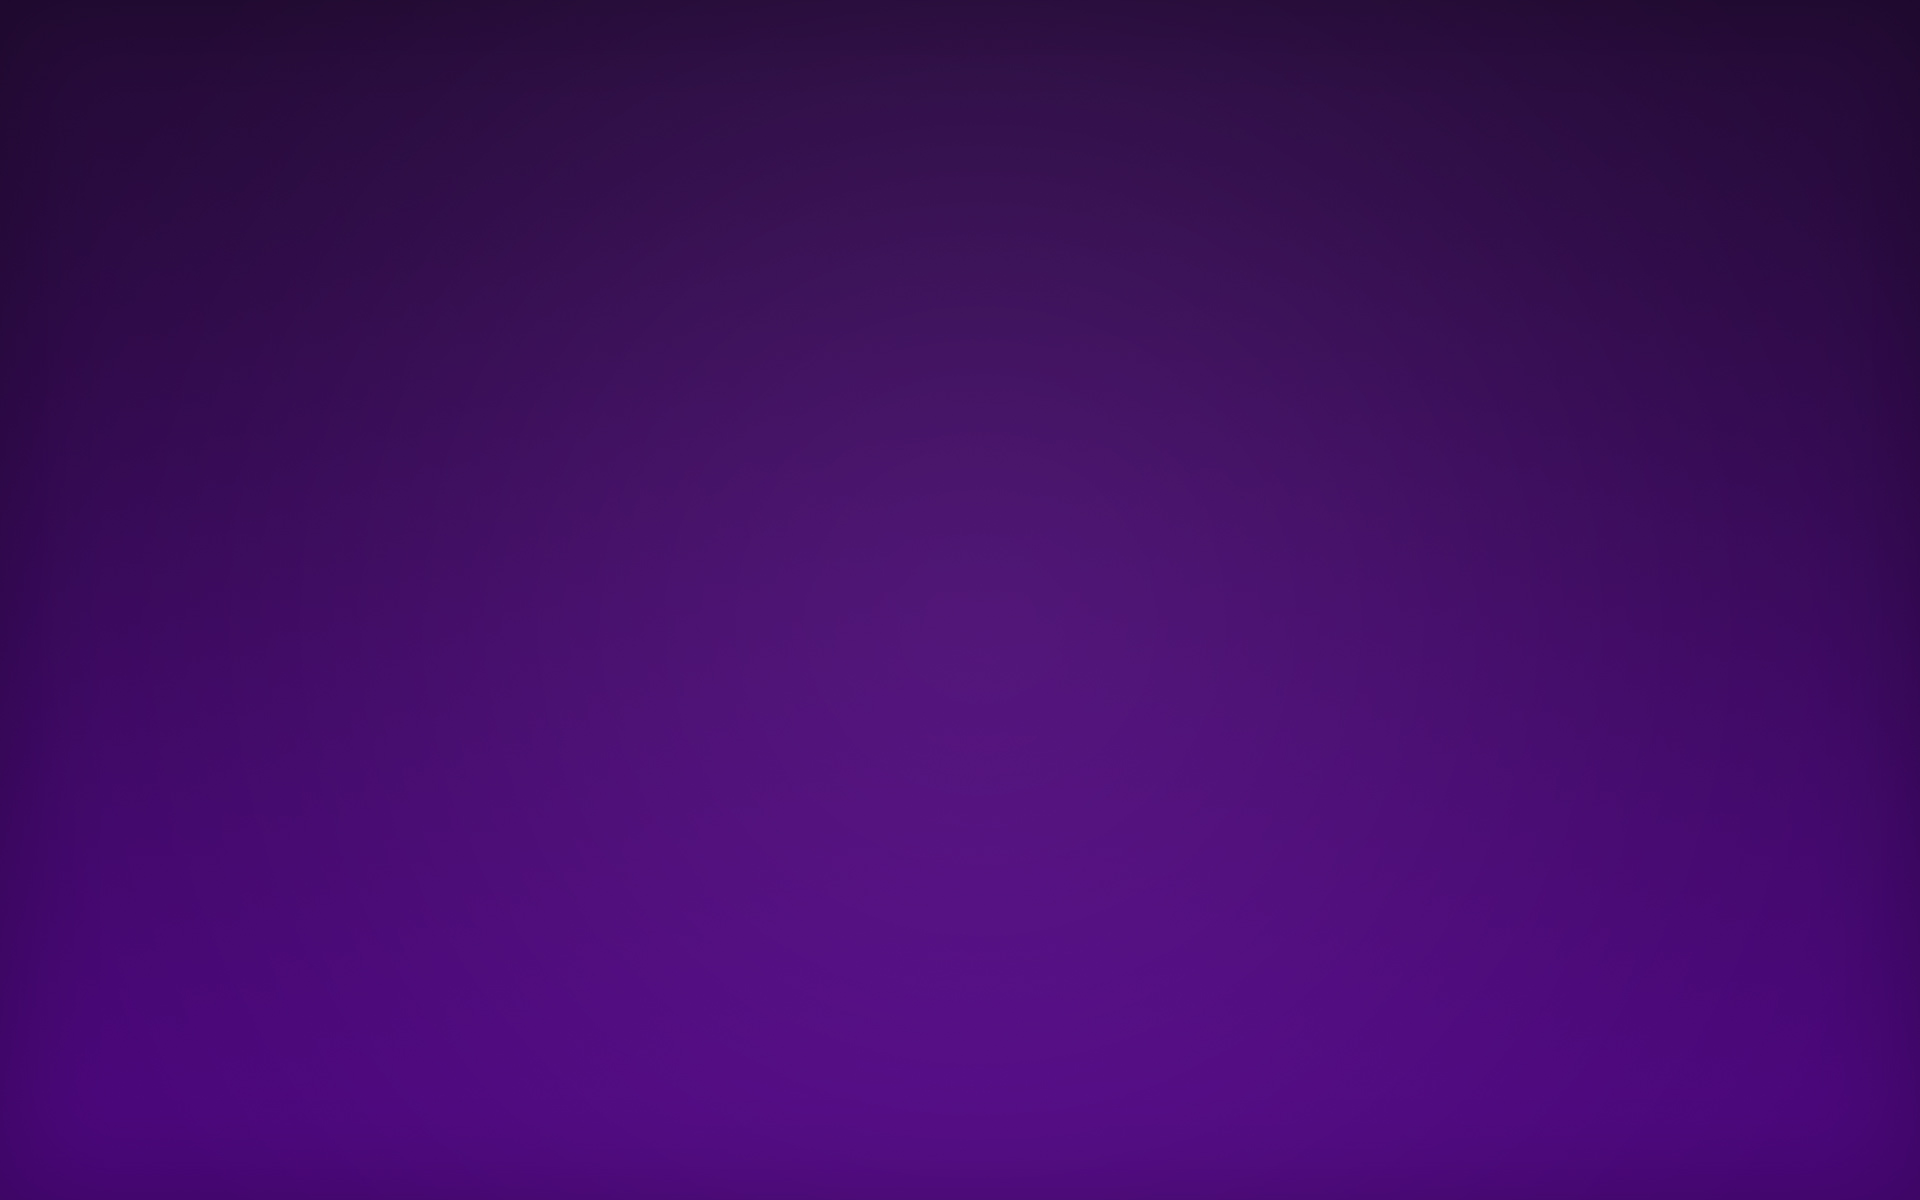 3. 20 Dark Purple Hair Color Ideas Trending in 2021 - wide 11